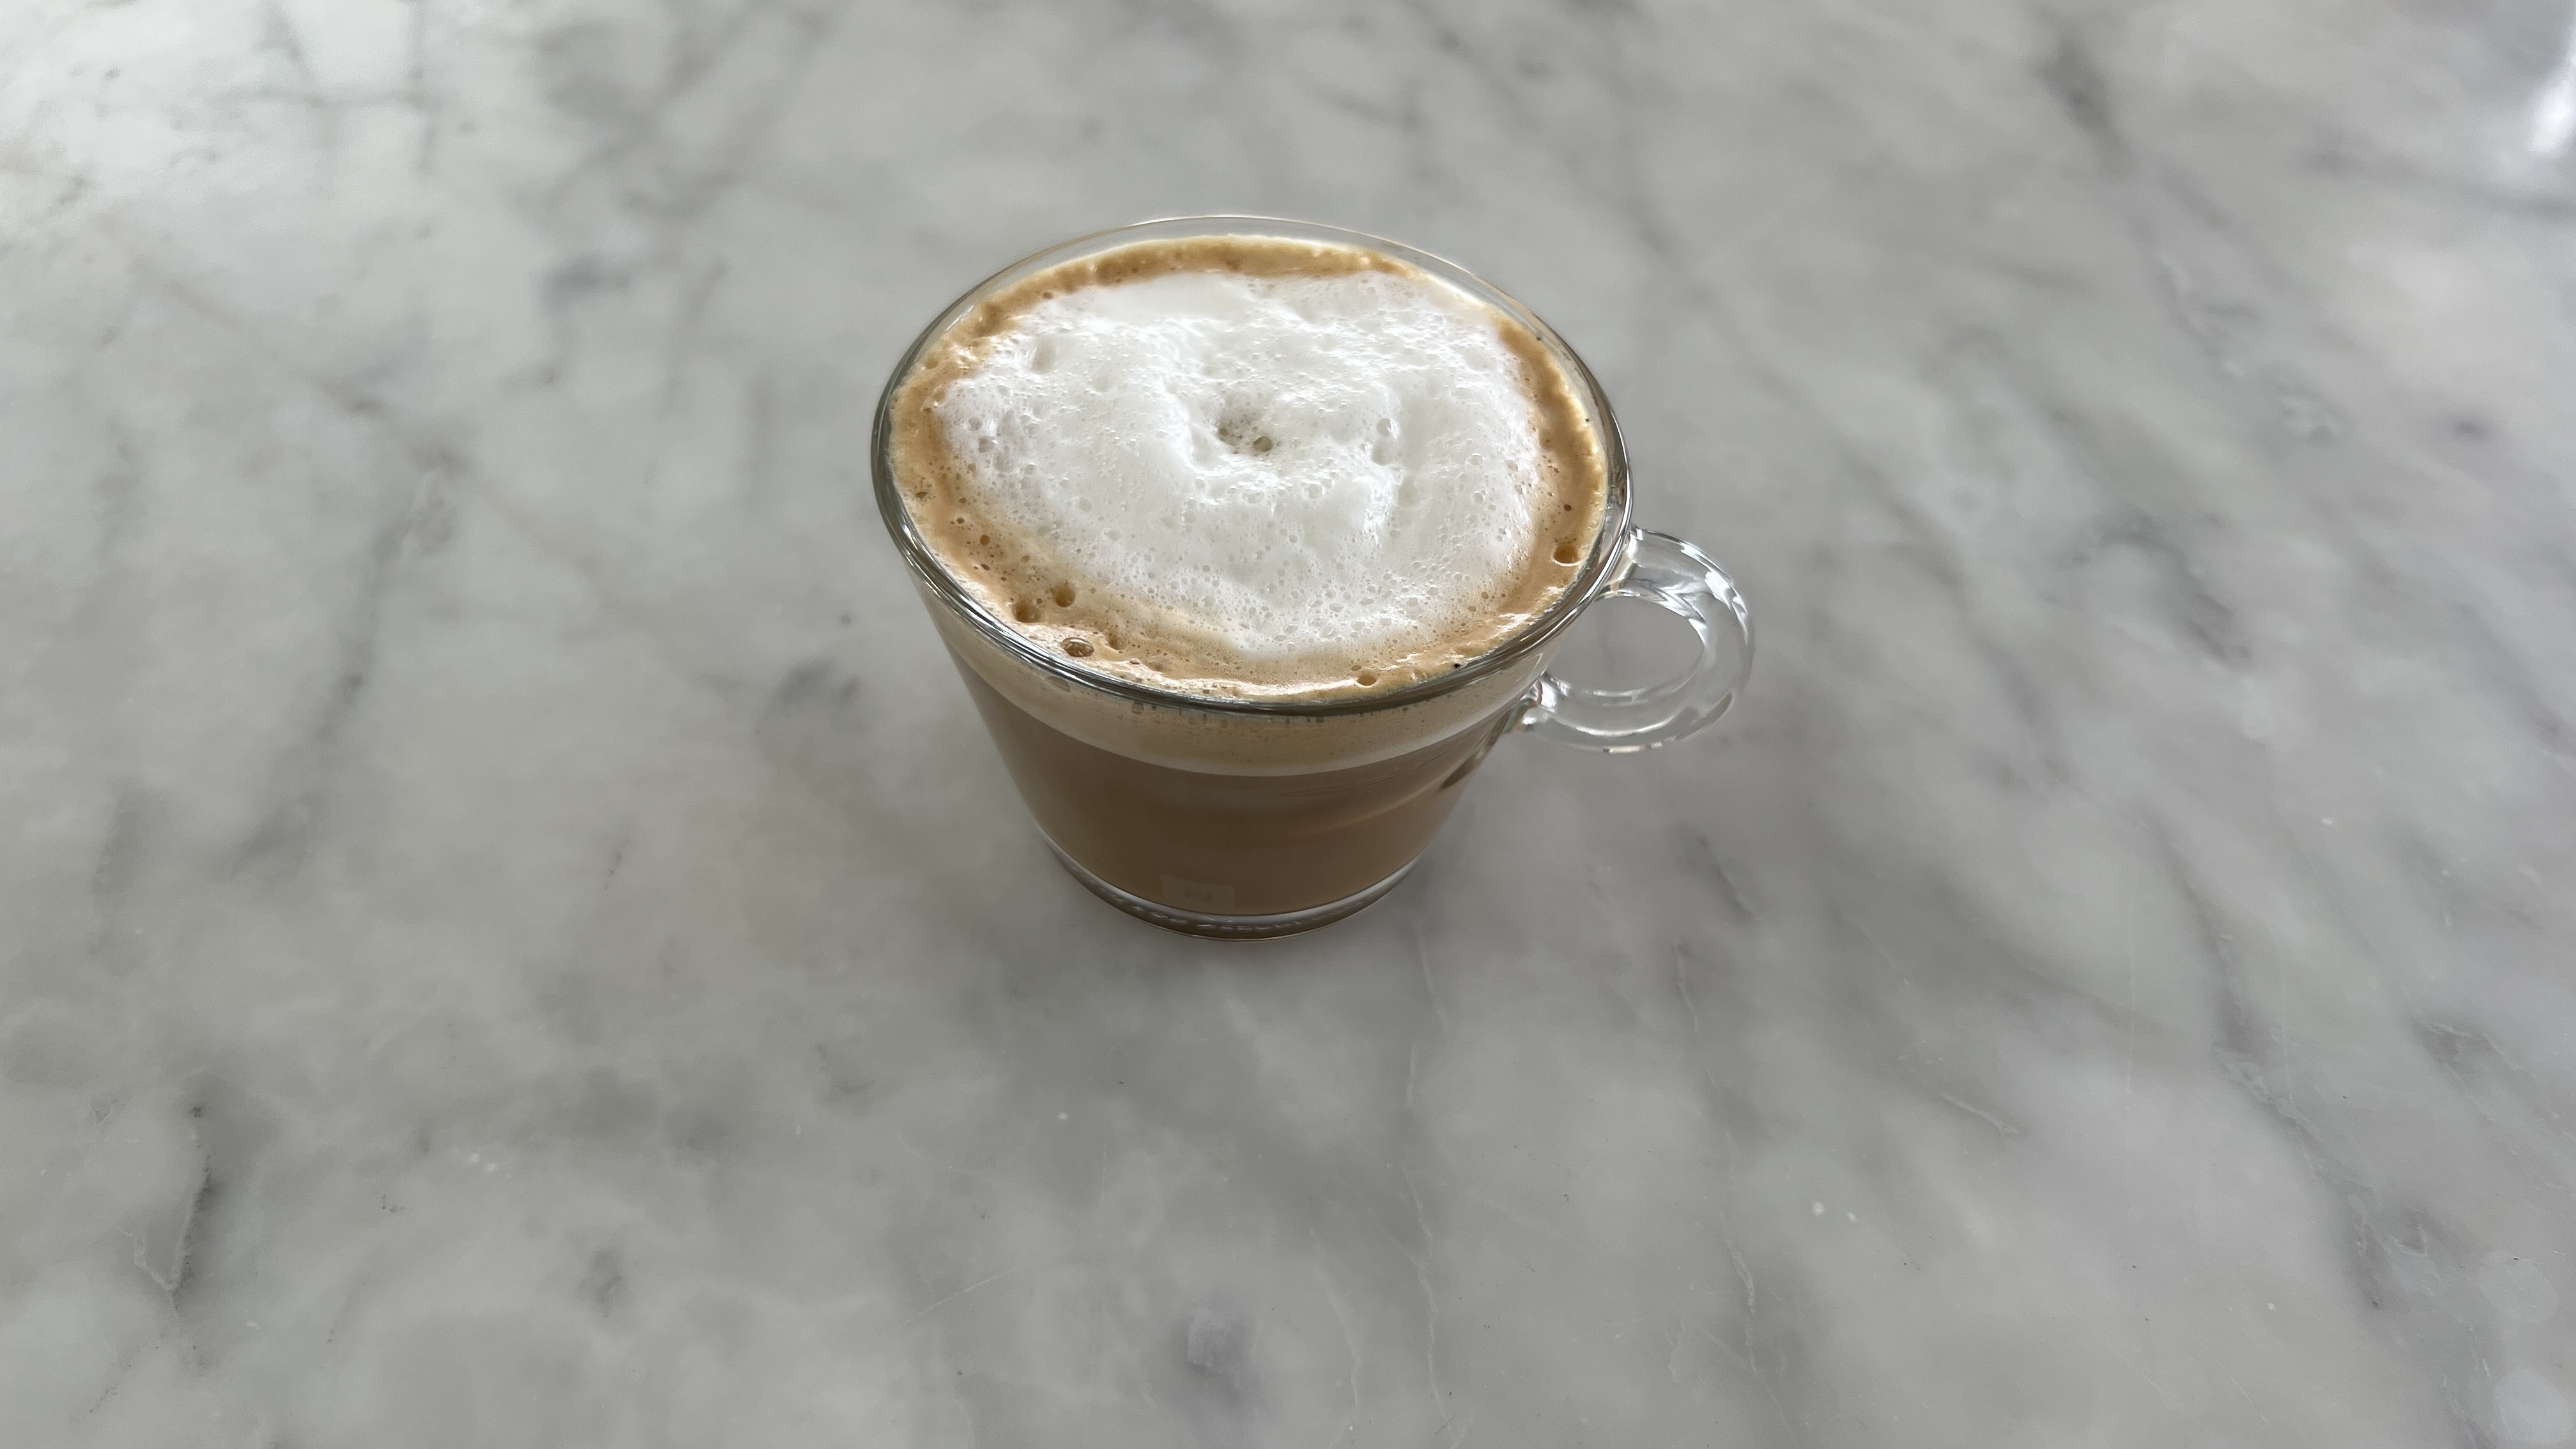 a foamy cut of latte on a marble worktop